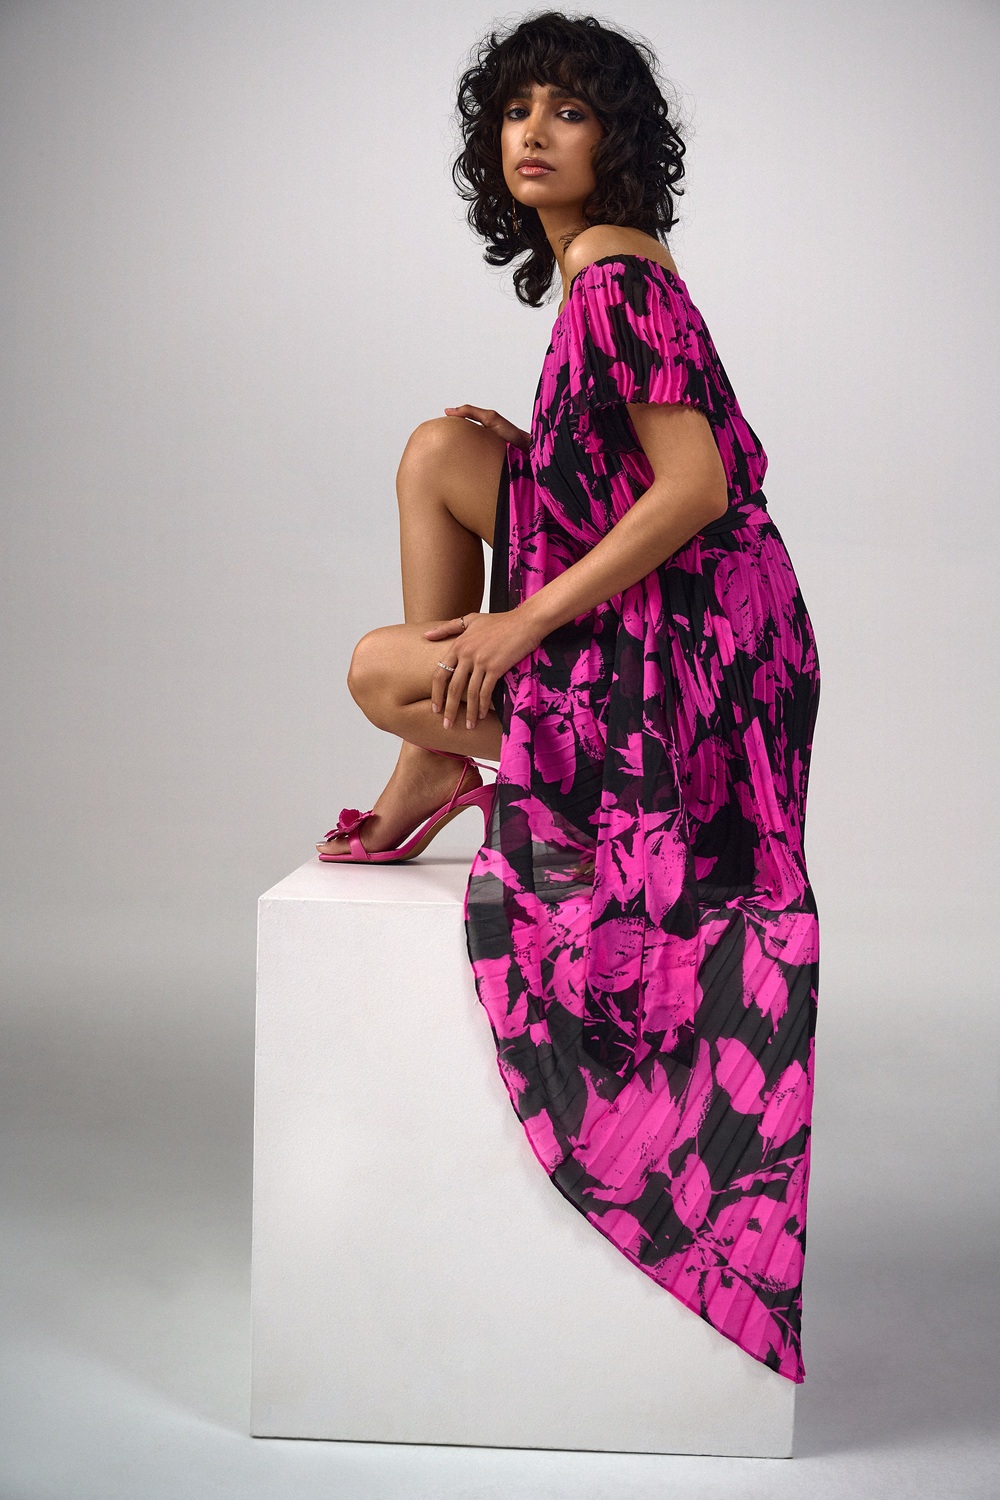 Off-Shoulder Floral & Pleated Dress Style 241908. Black/pink